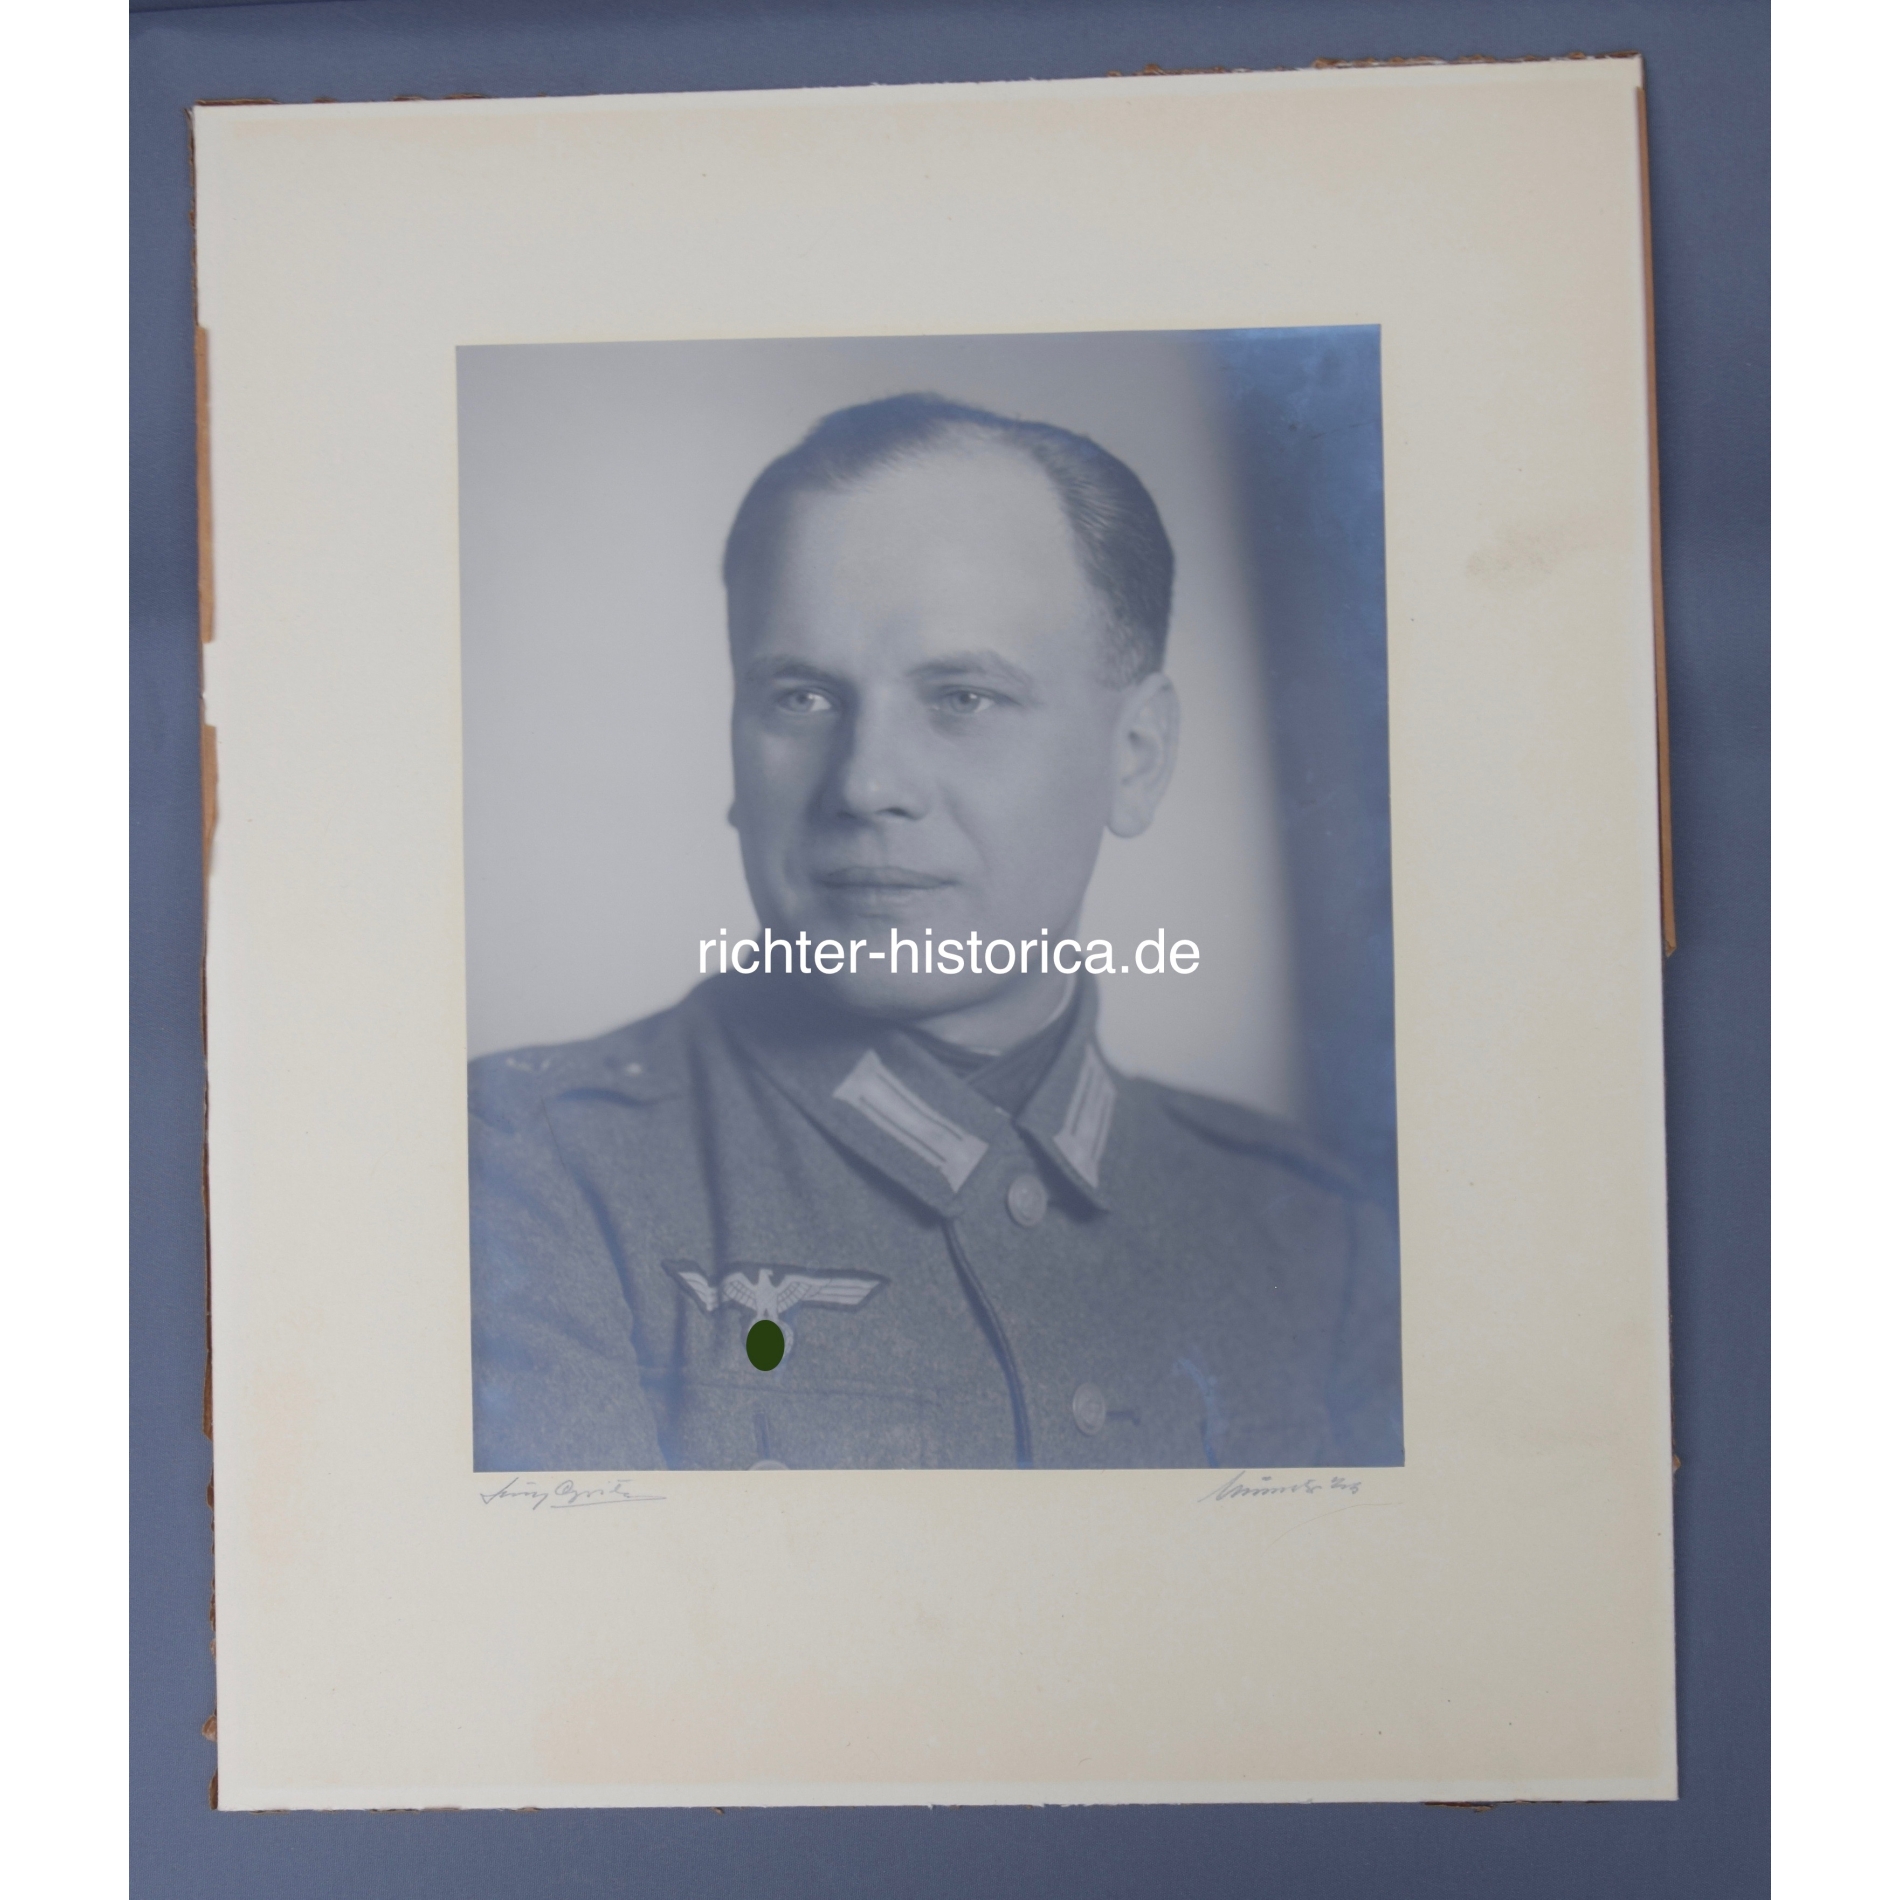  Großes Portrait von einem Soldaten der Infantrie 2.Weltkrieg